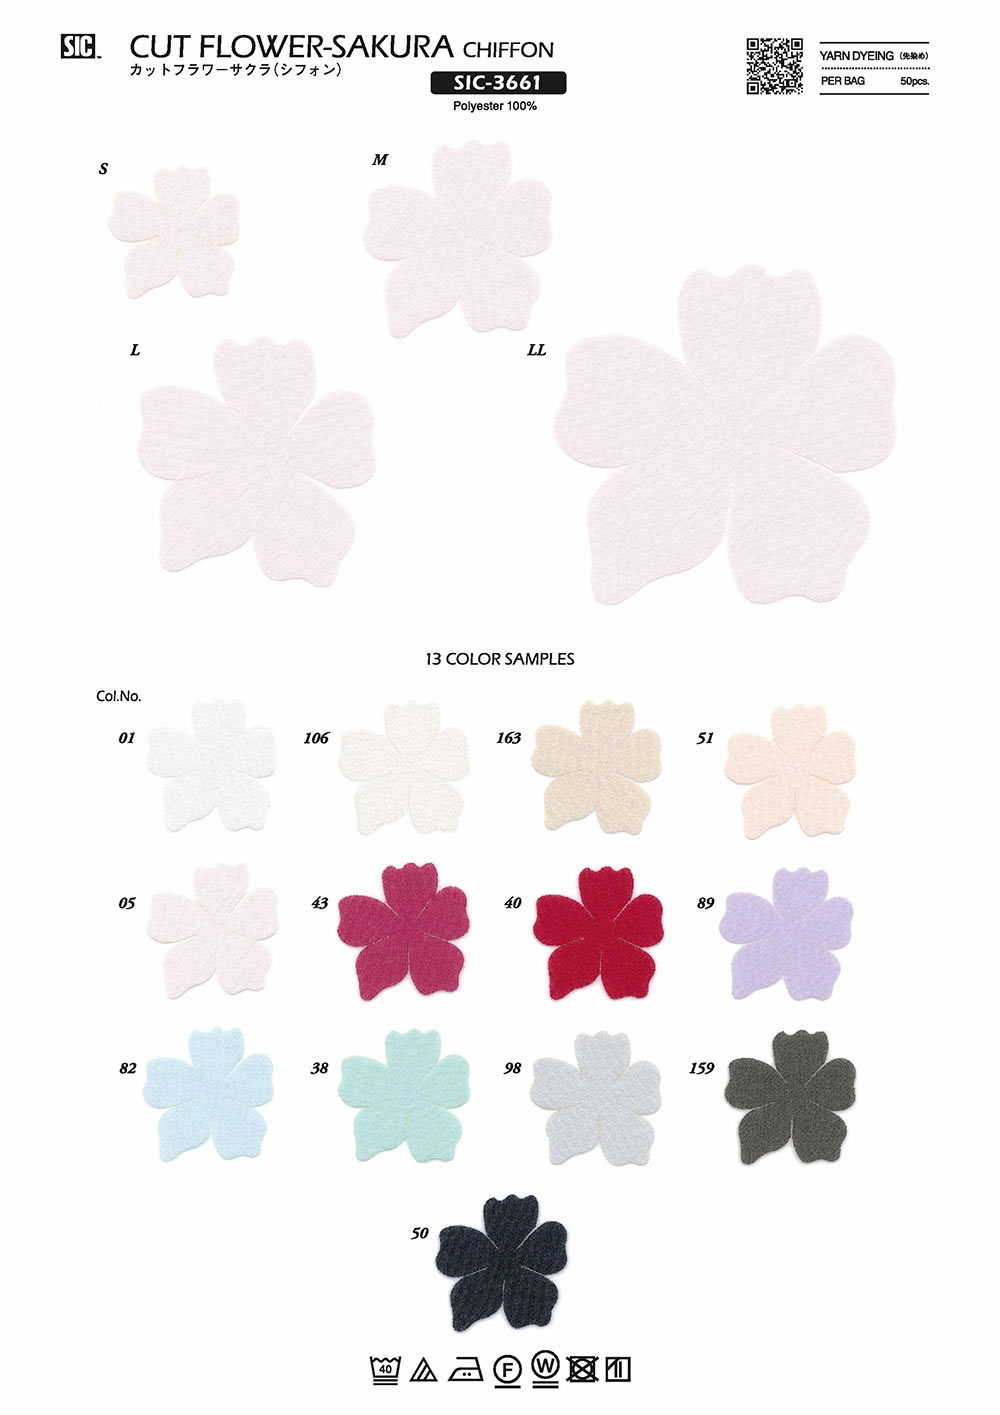 SIC-3661 Fleur Coupée Sakura (Mousseline De Soie)[Marchandises Diverses Et Autres] SHINDO(SIC)